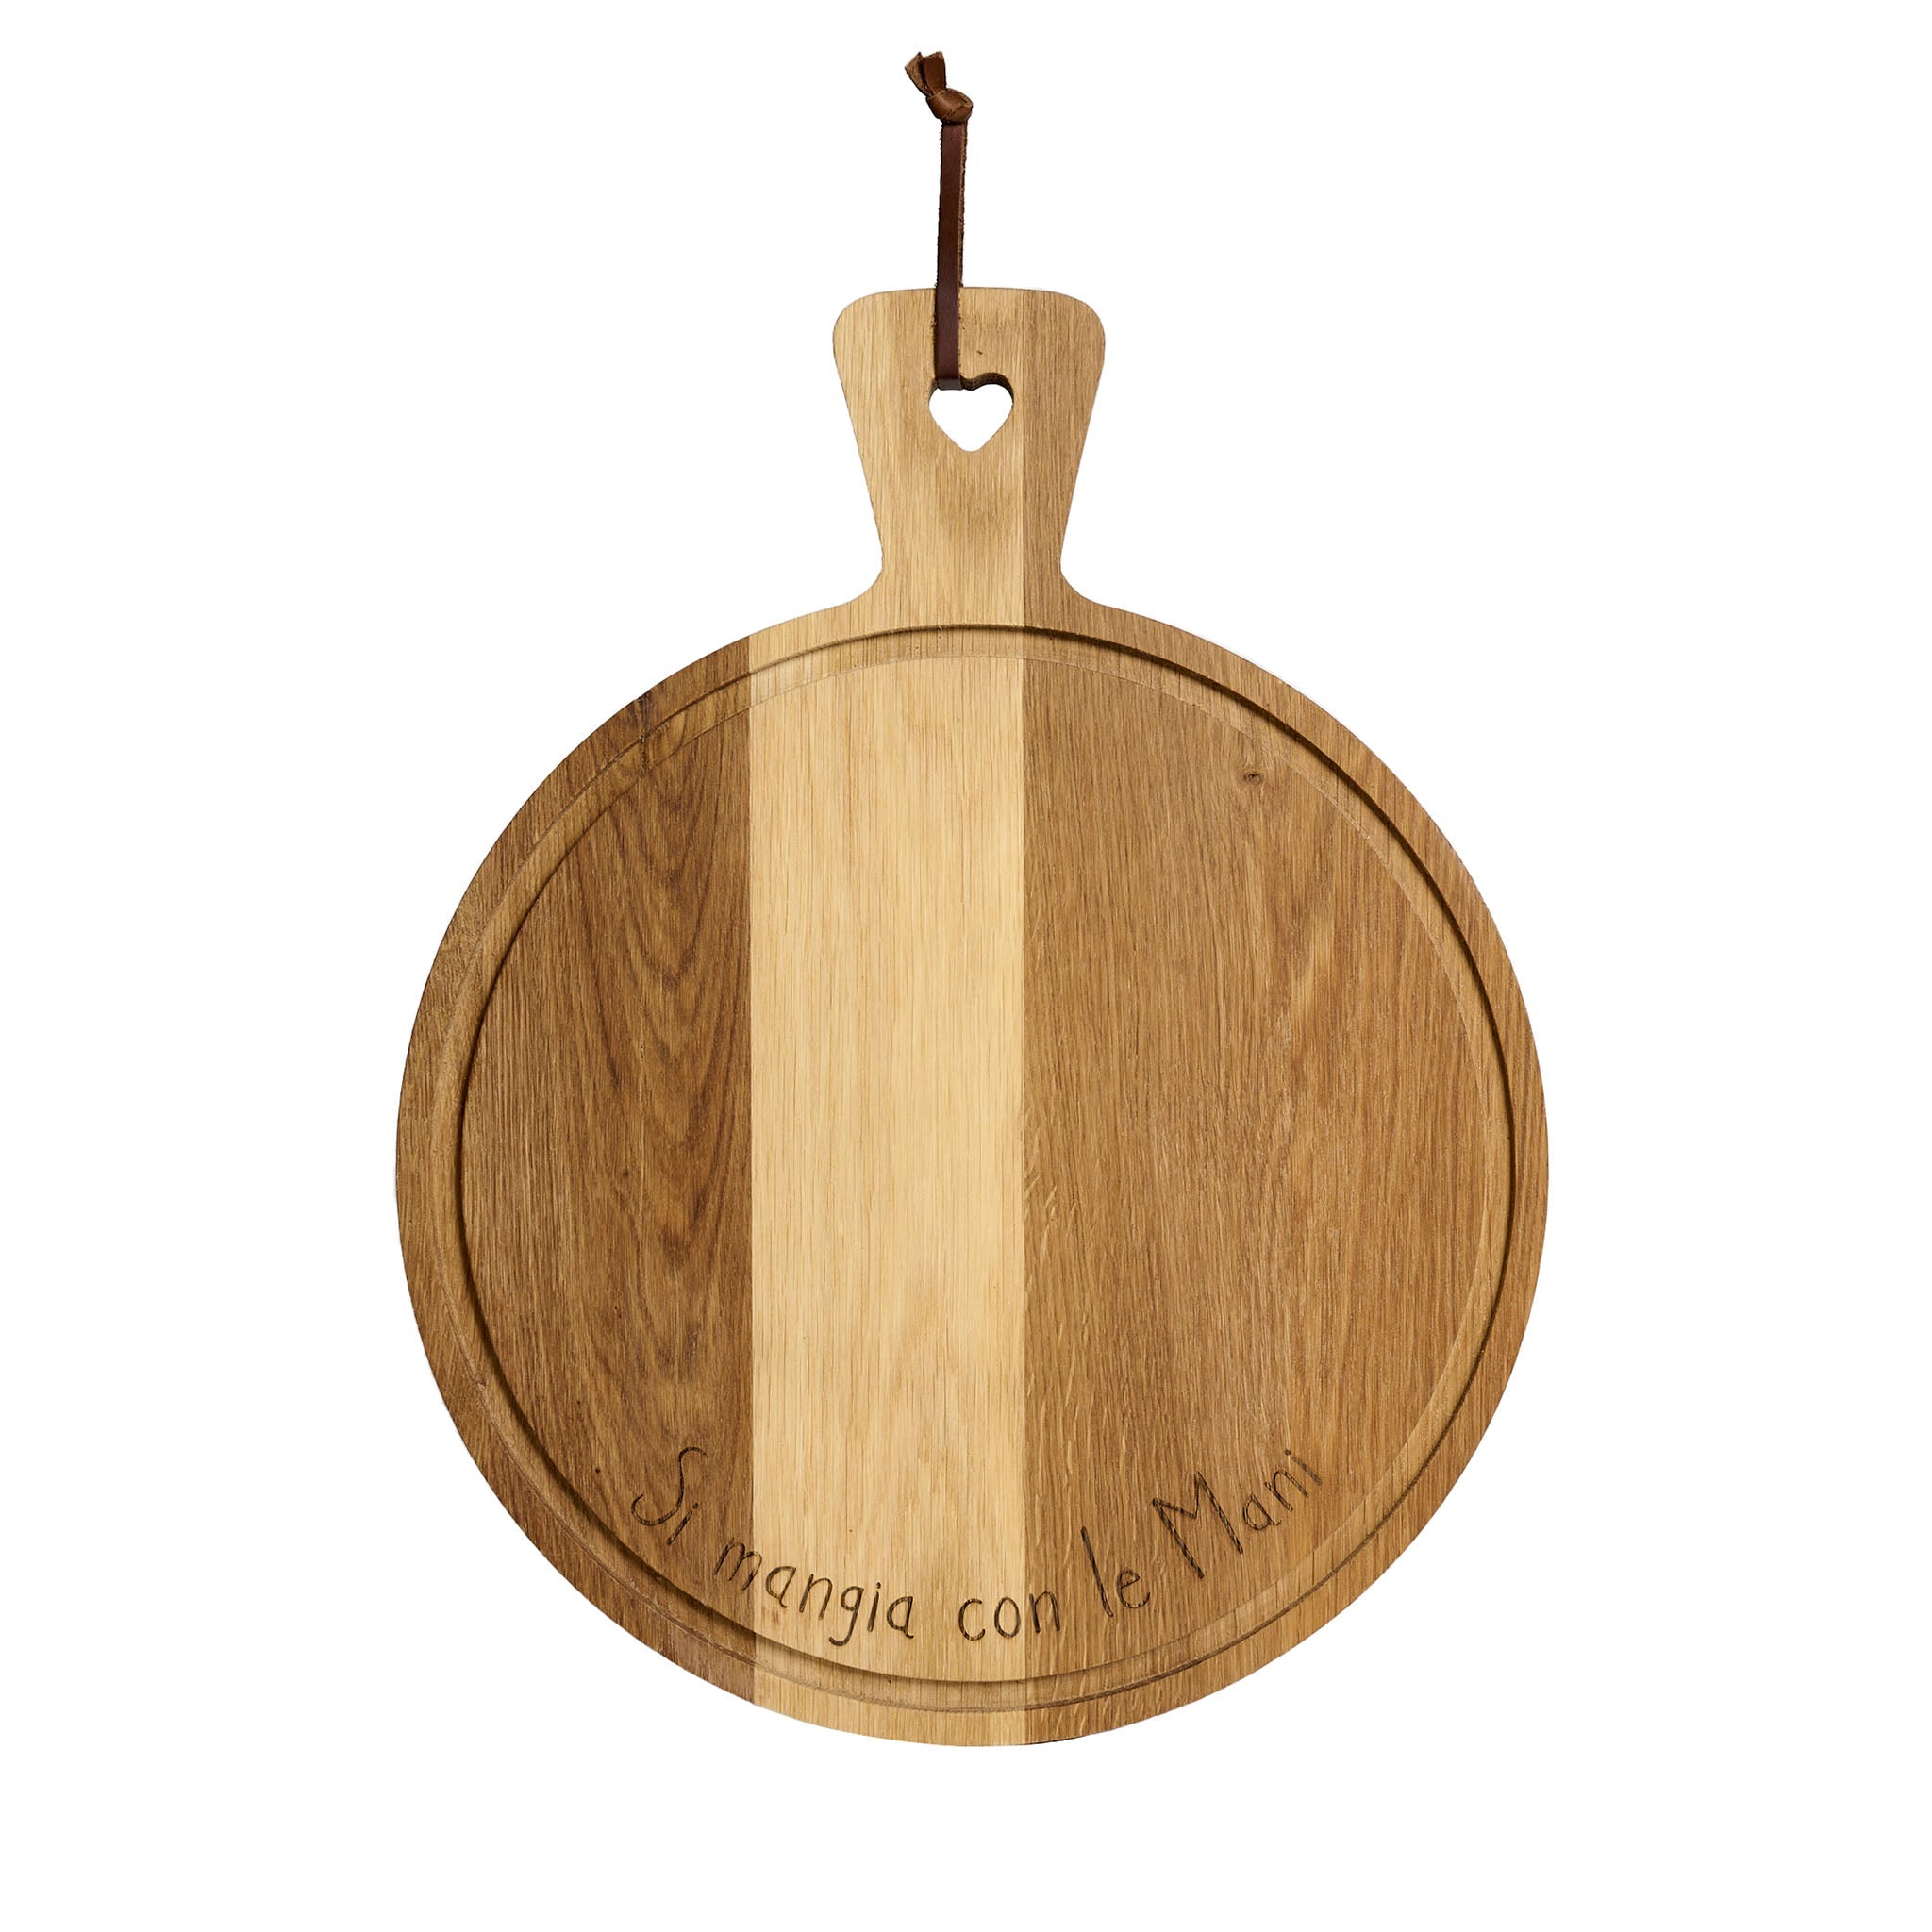 Si Mangia Con Le Mani round-shaped cutting board